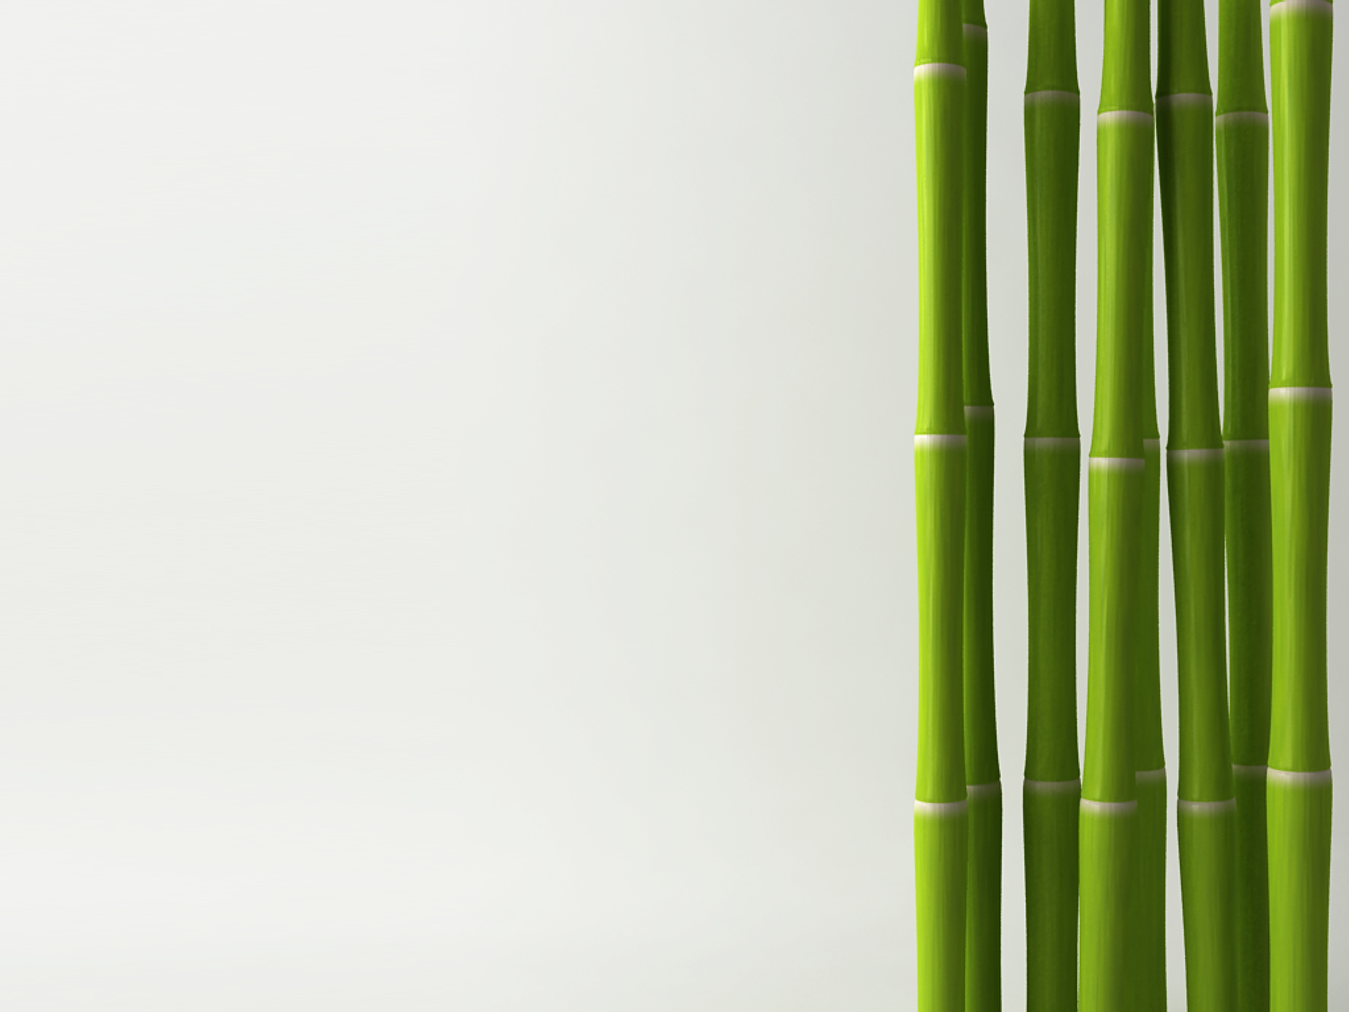 Бамбук Широшима. Бамбук по7бм024. Бамбук на белом фоне. Бамбуковые стебли. Биг бамбу big bambooo com